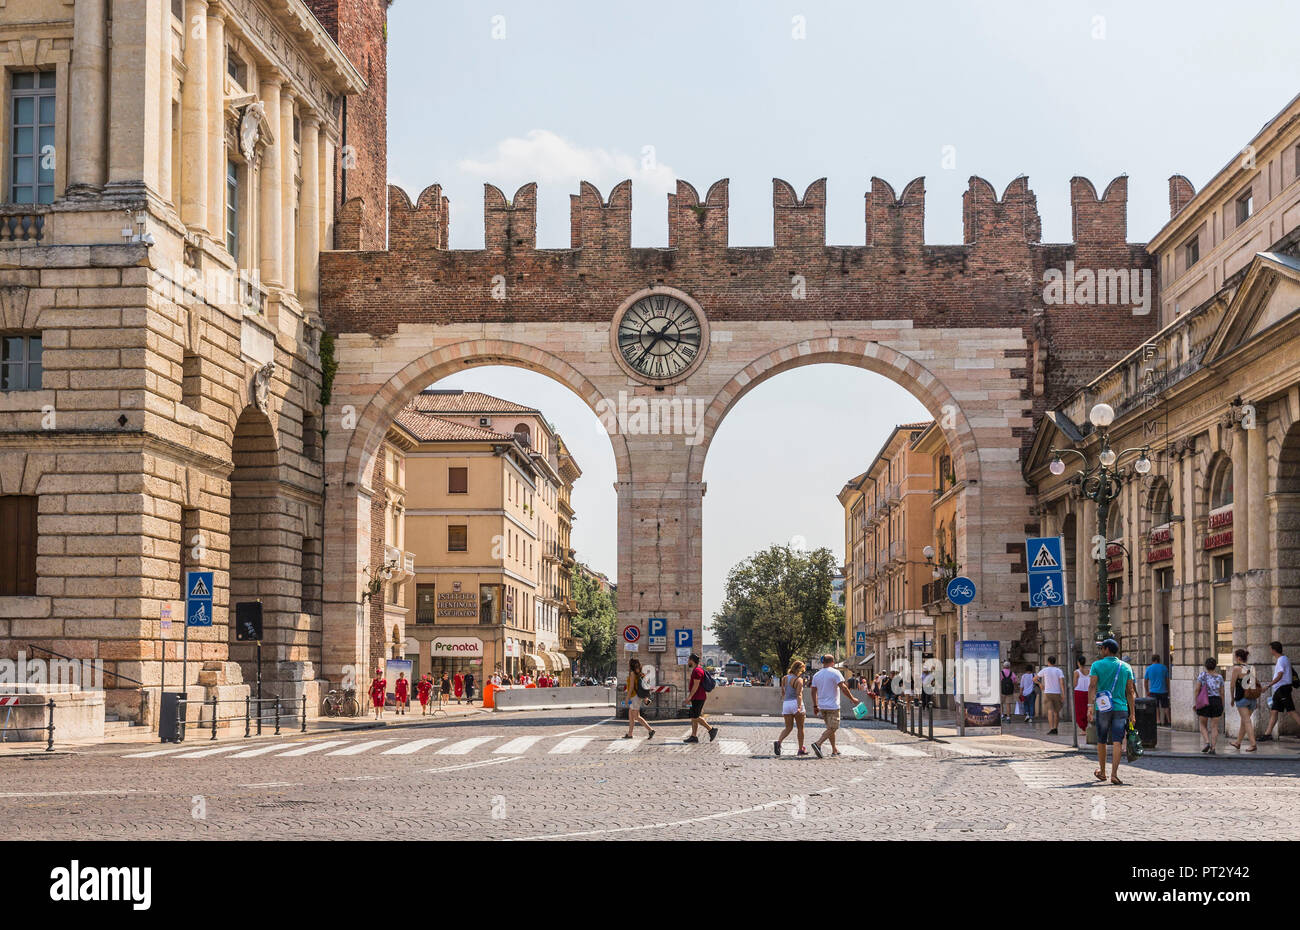 Archways Portoni della Bra, Piazza Bra, Verona, Veneto, Italy, Europe Stock Photo